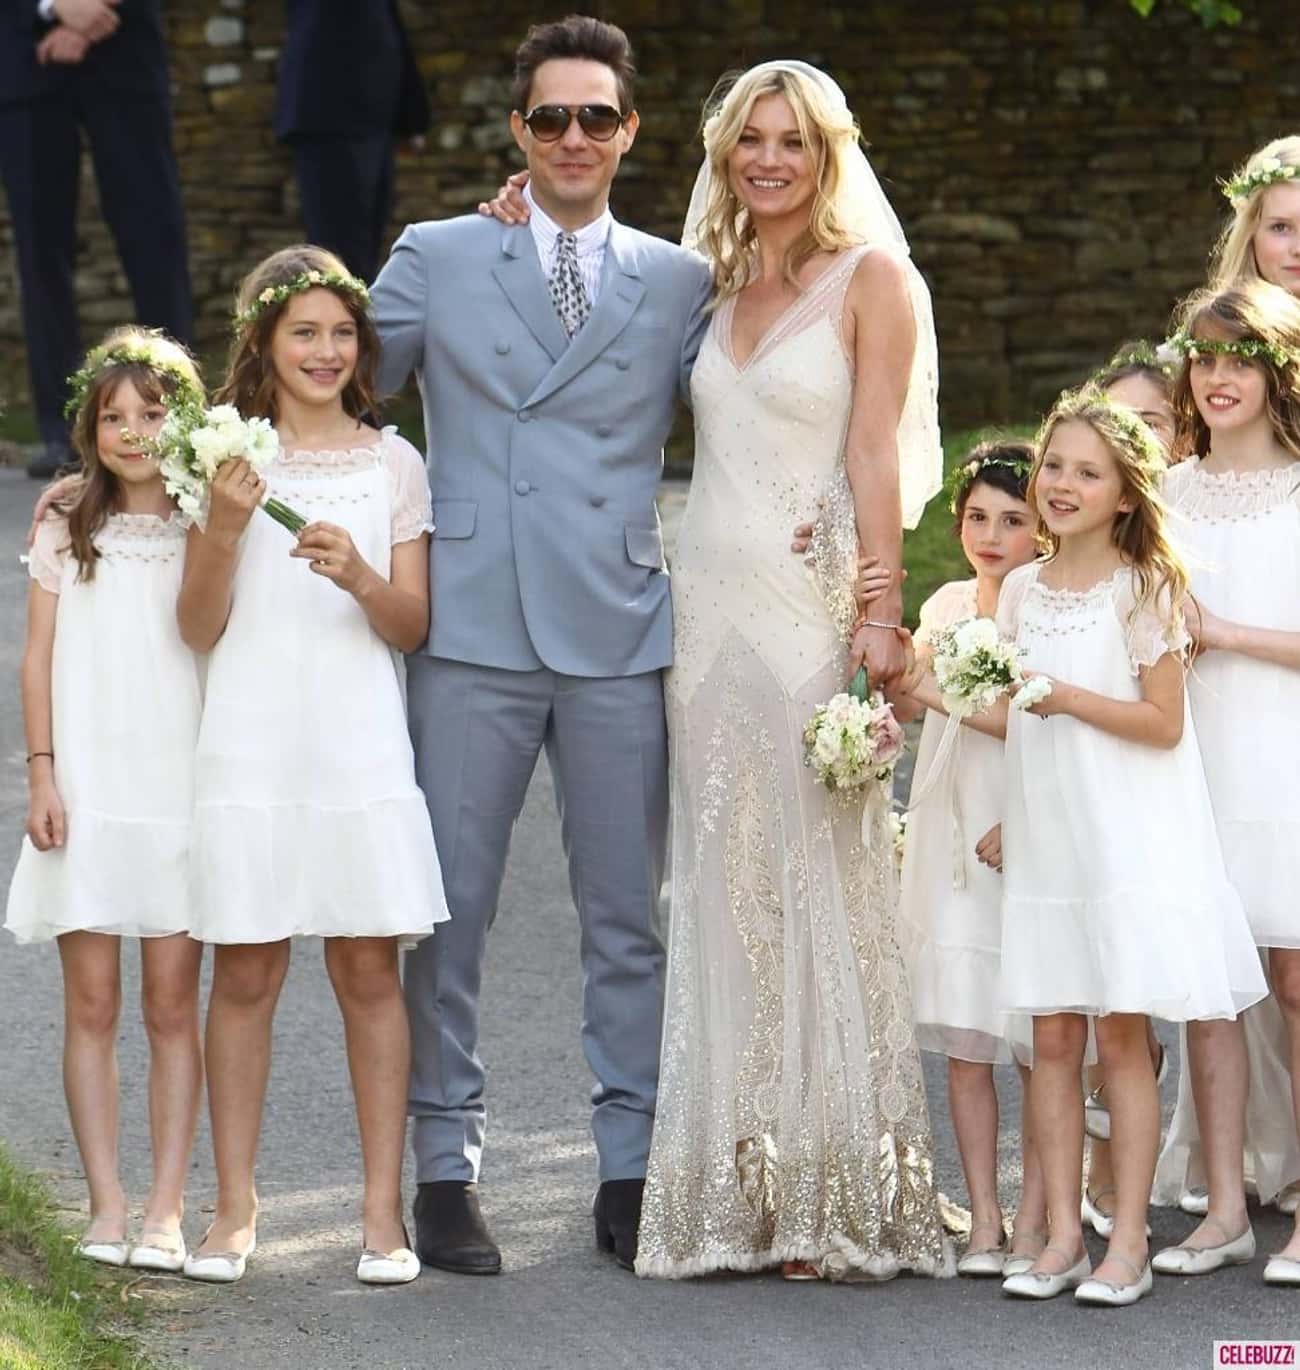 Кейт выходит замуж. Кейт Мосс свадьба. Кейт Мосс и Джейми Хинс свадьба. Кейт Мосс в свадебном. Свадебное платье Кейт Мосс.